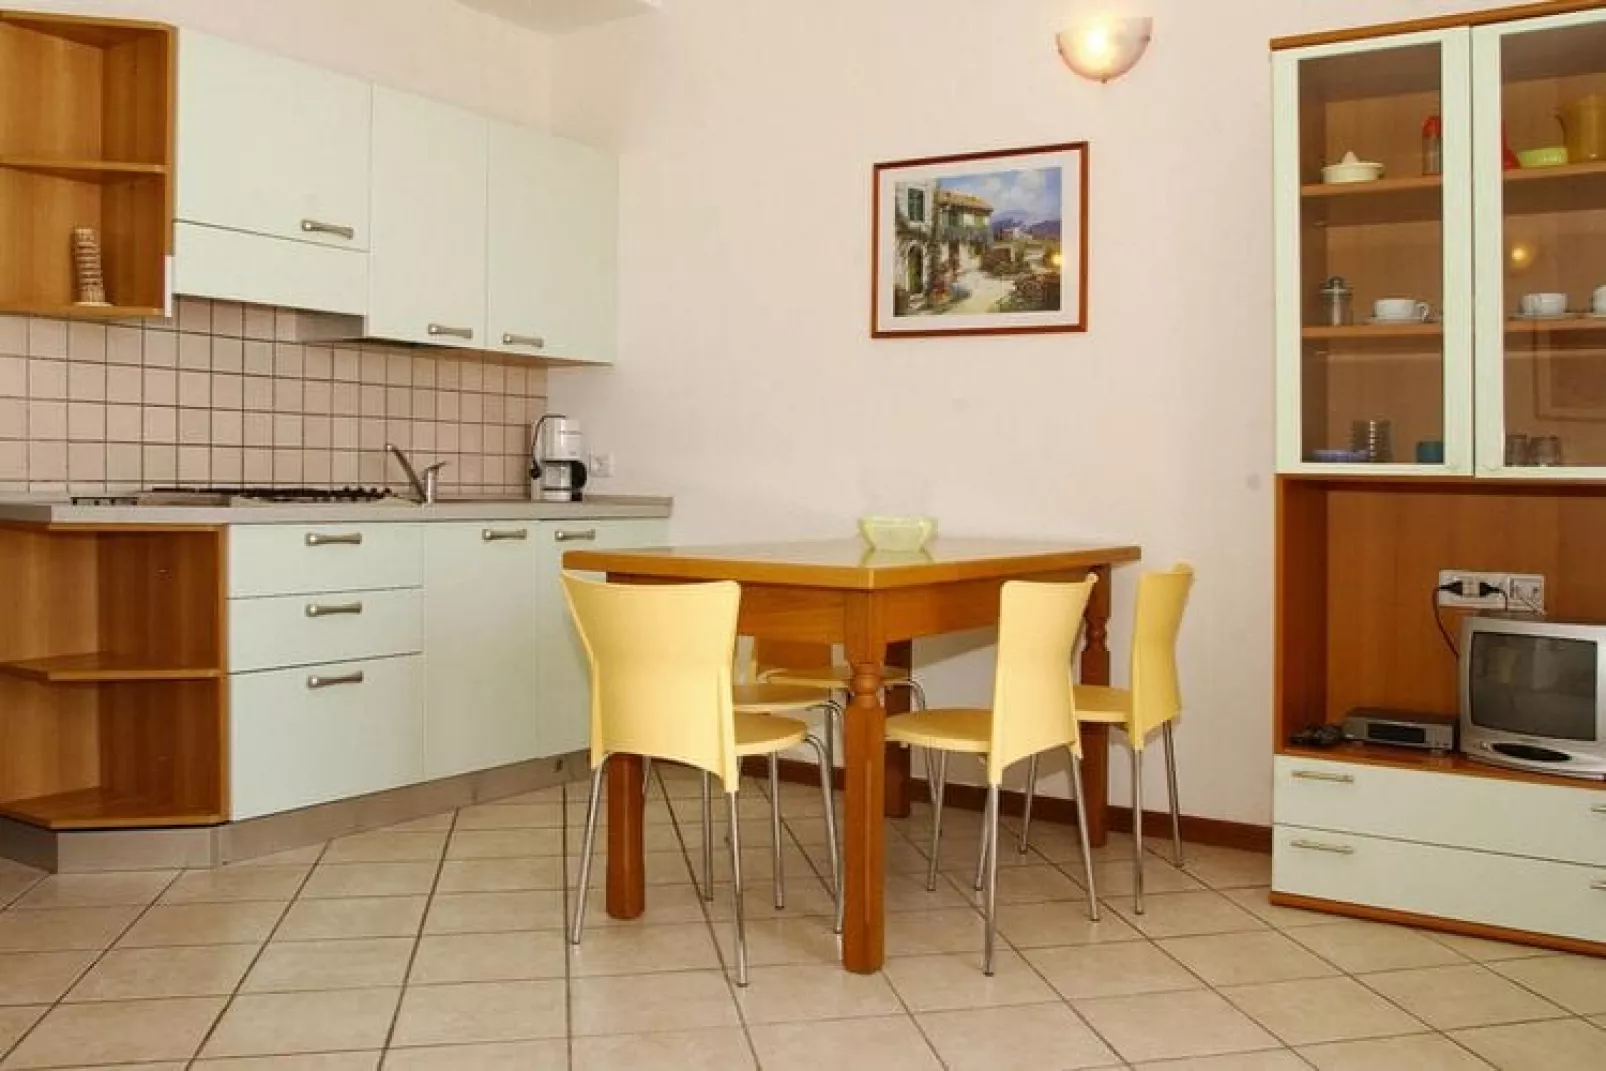 Appartement in Tignale met barbecue-Keuken